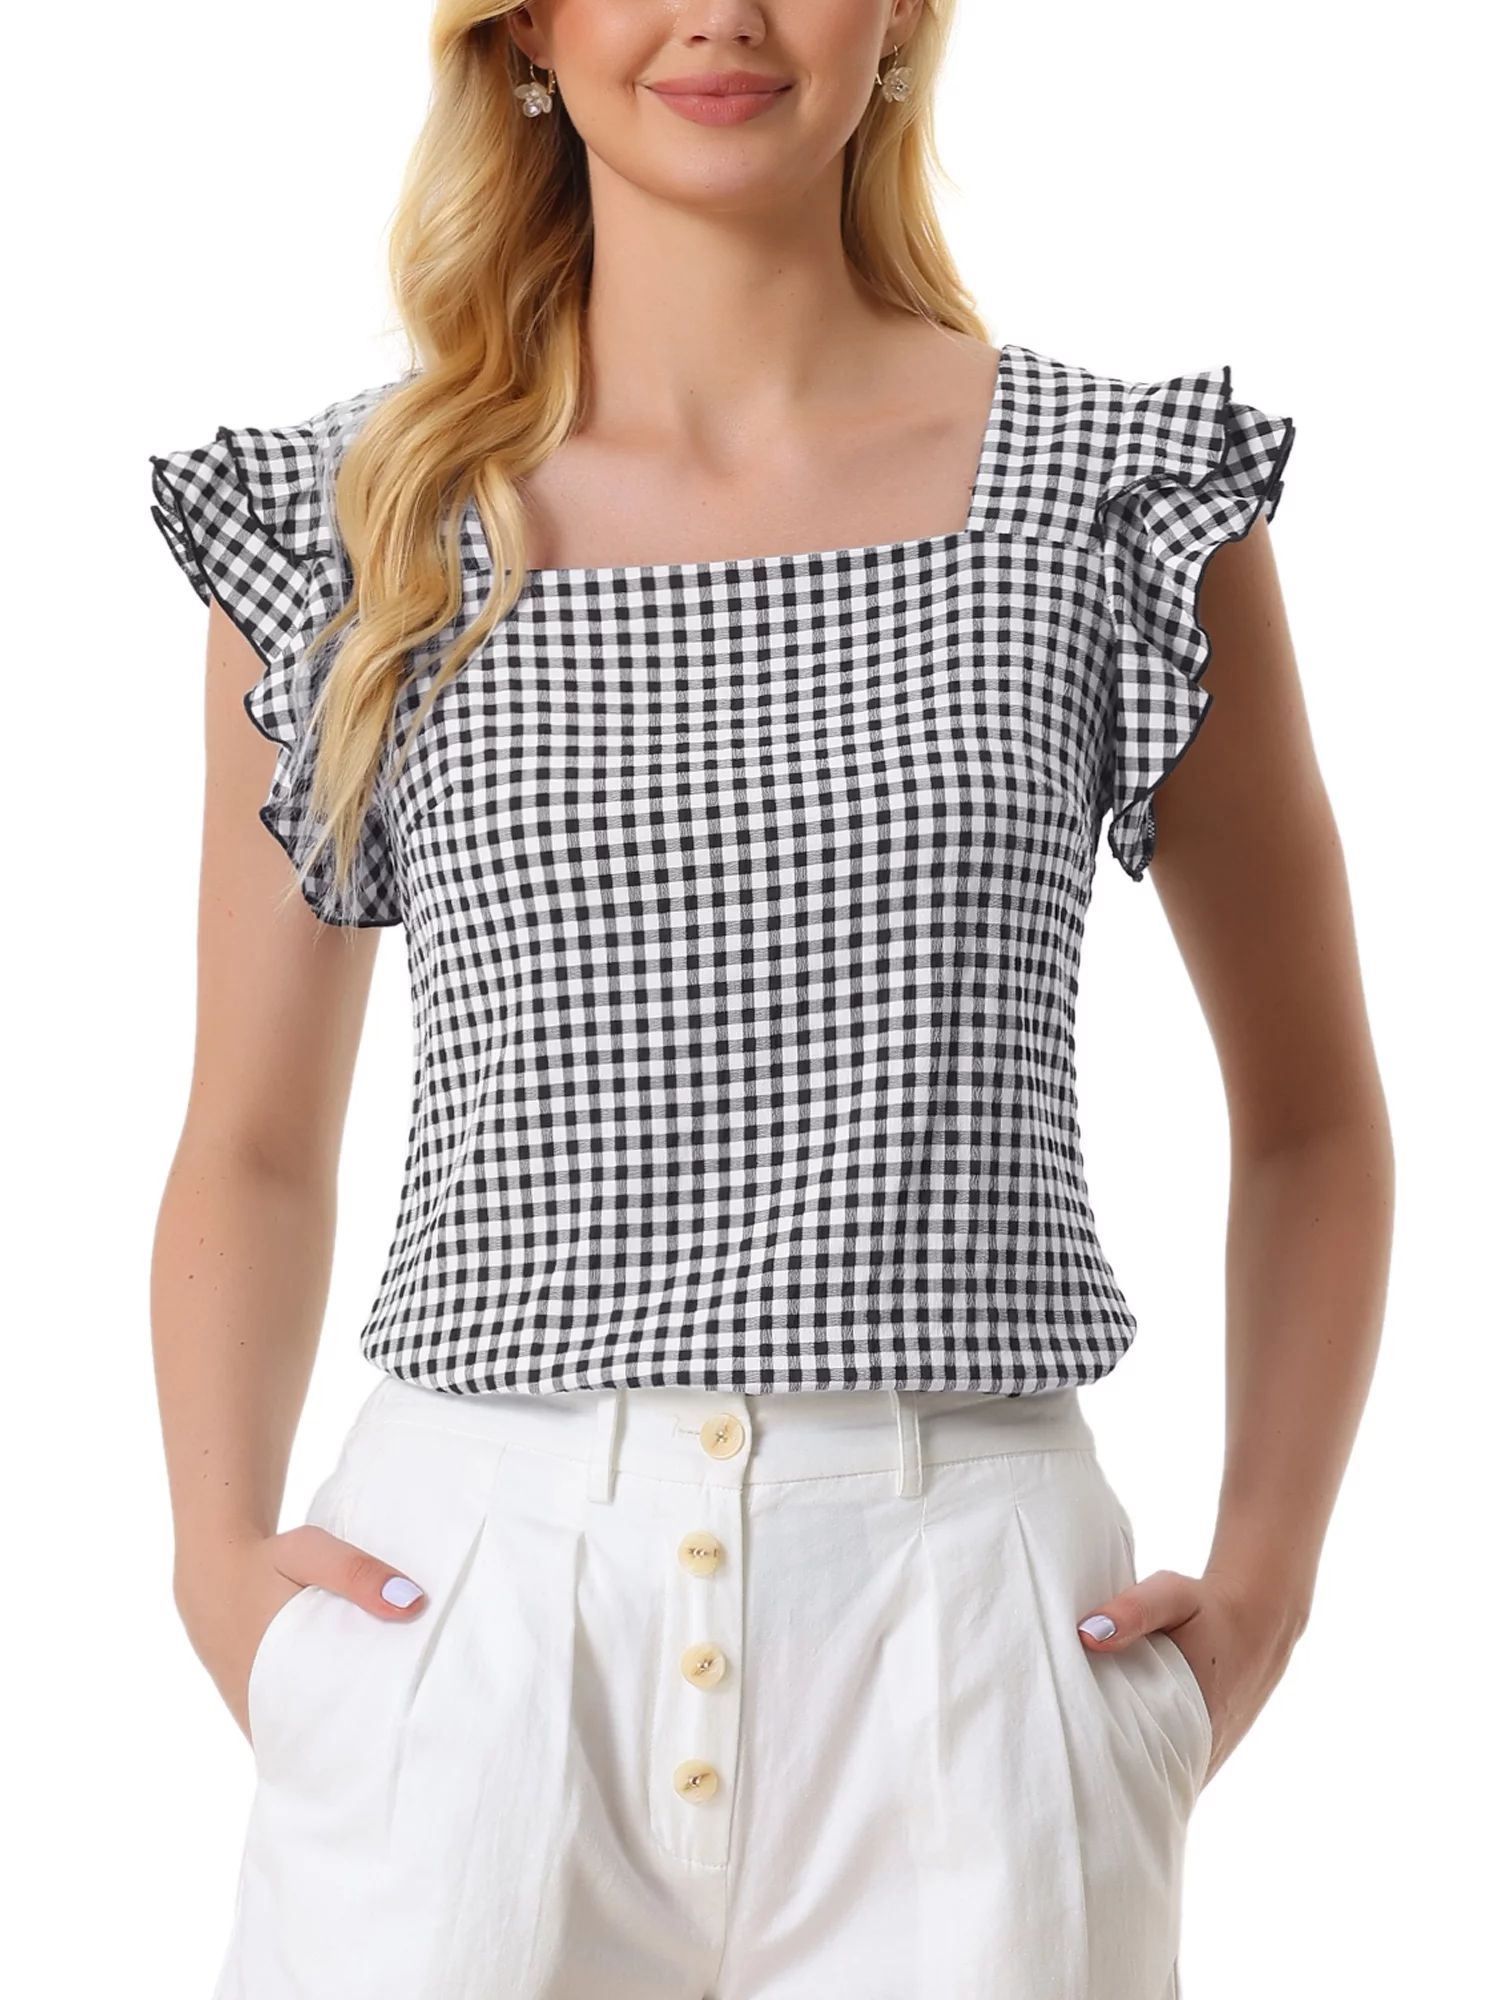 Allegra K Summer Gingham Tops for Women's Square Neck Ruffle Sleeve Blouse | Walmart (US)